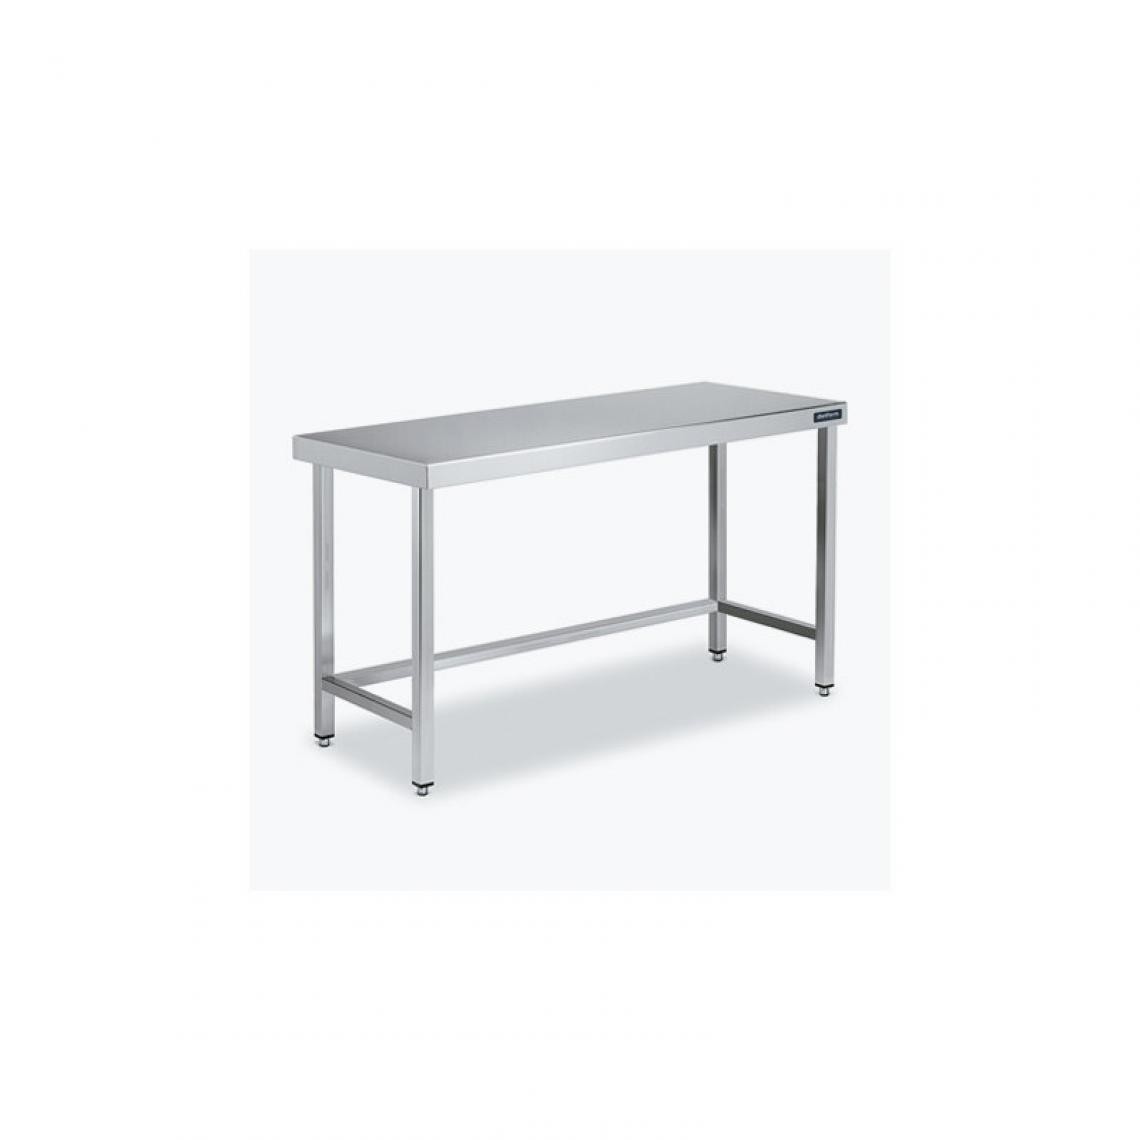 DISTFORM - Table Centrale 600x700 avec Renforts - Distform - Inox 18/102200x700x850mm - Tables à manger